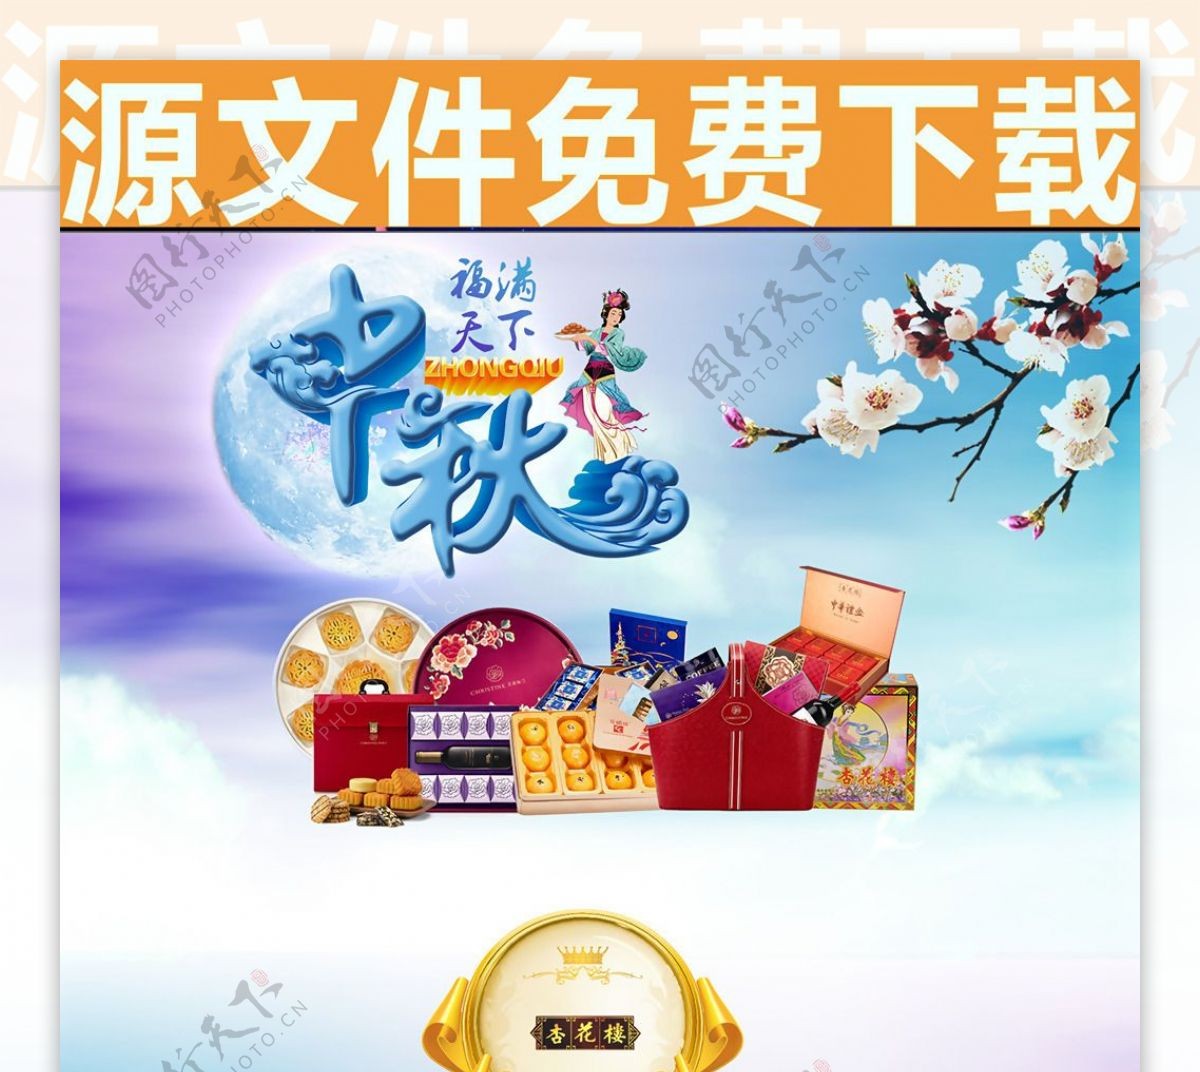 中秋节淘宝天猫店铺节日促销设计网页模板